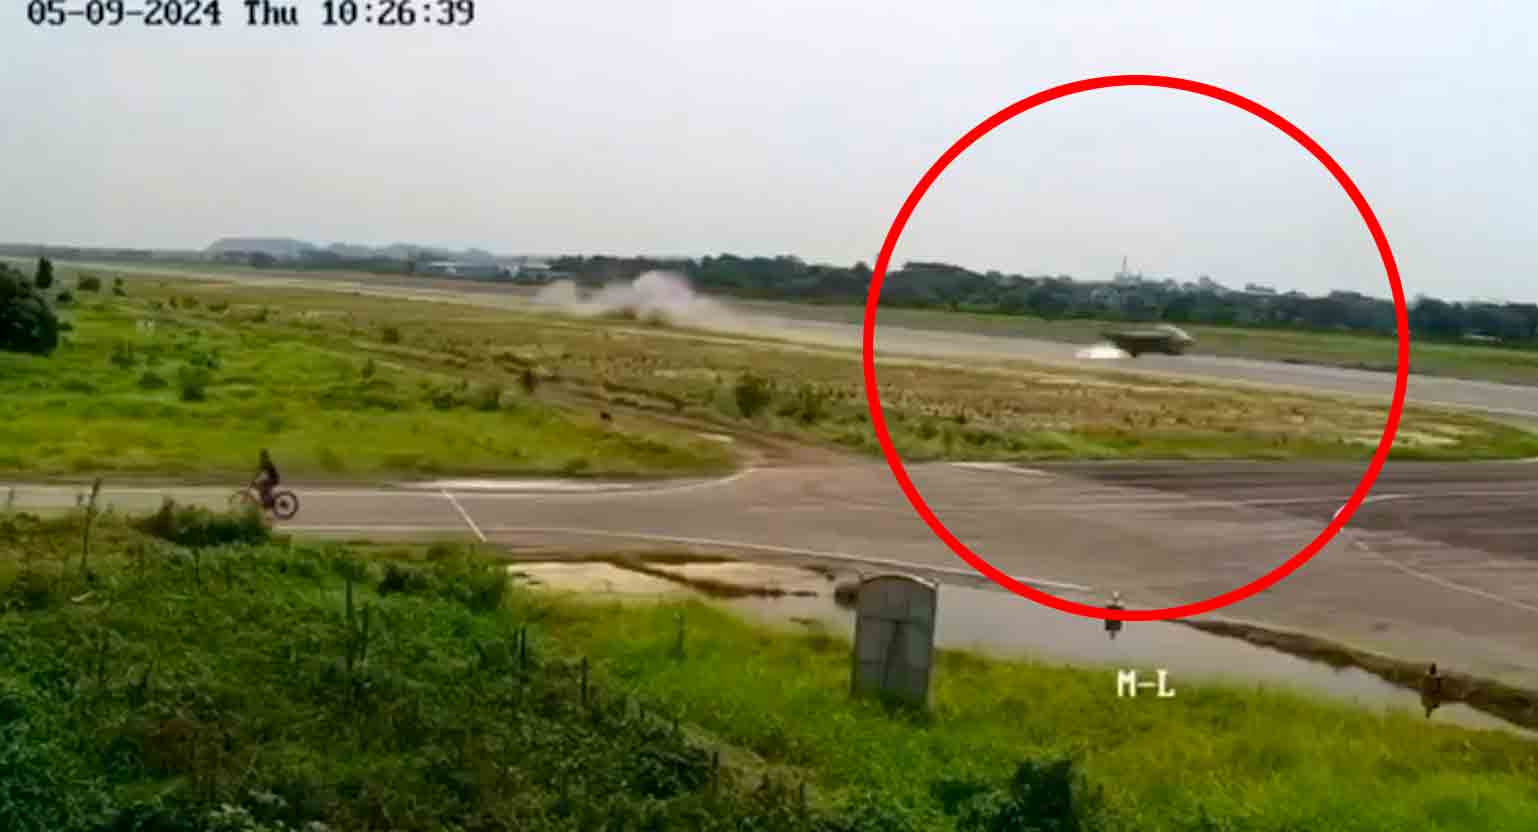 Video: Caccia Yak-130 della Forza Aerea del Bangladesh cade subito dopo un errore del pilota in una manovra rischiosa. Foto: Riproduzione Twitter @RealAirPower1